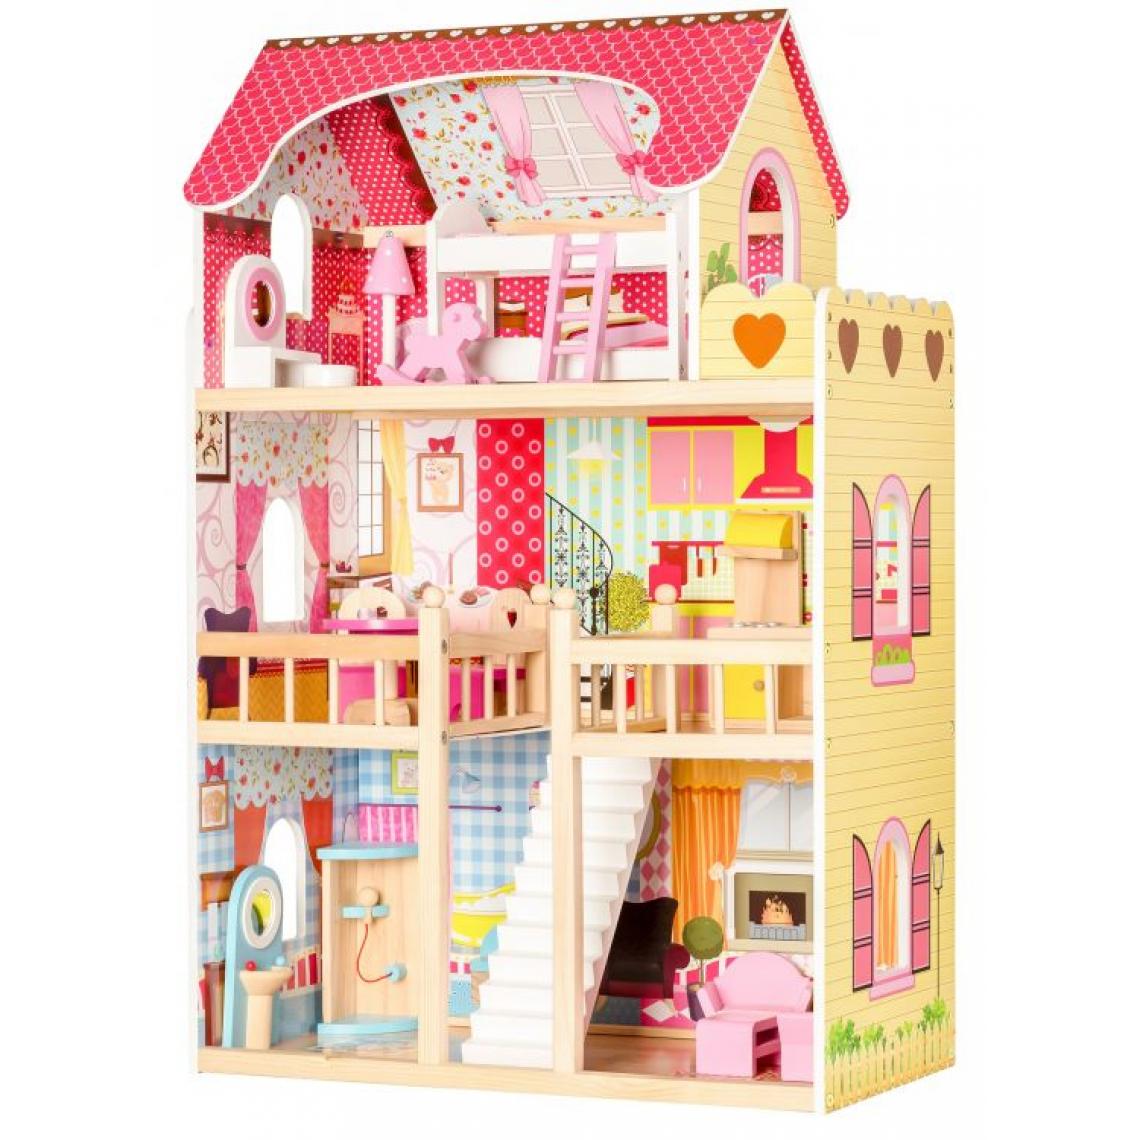 Hucoco - MSTORE - Maison de poupée en bois - 90x59x33 - Age +3ans - 17 éléments - Jouet enfant - Rose - Poupées